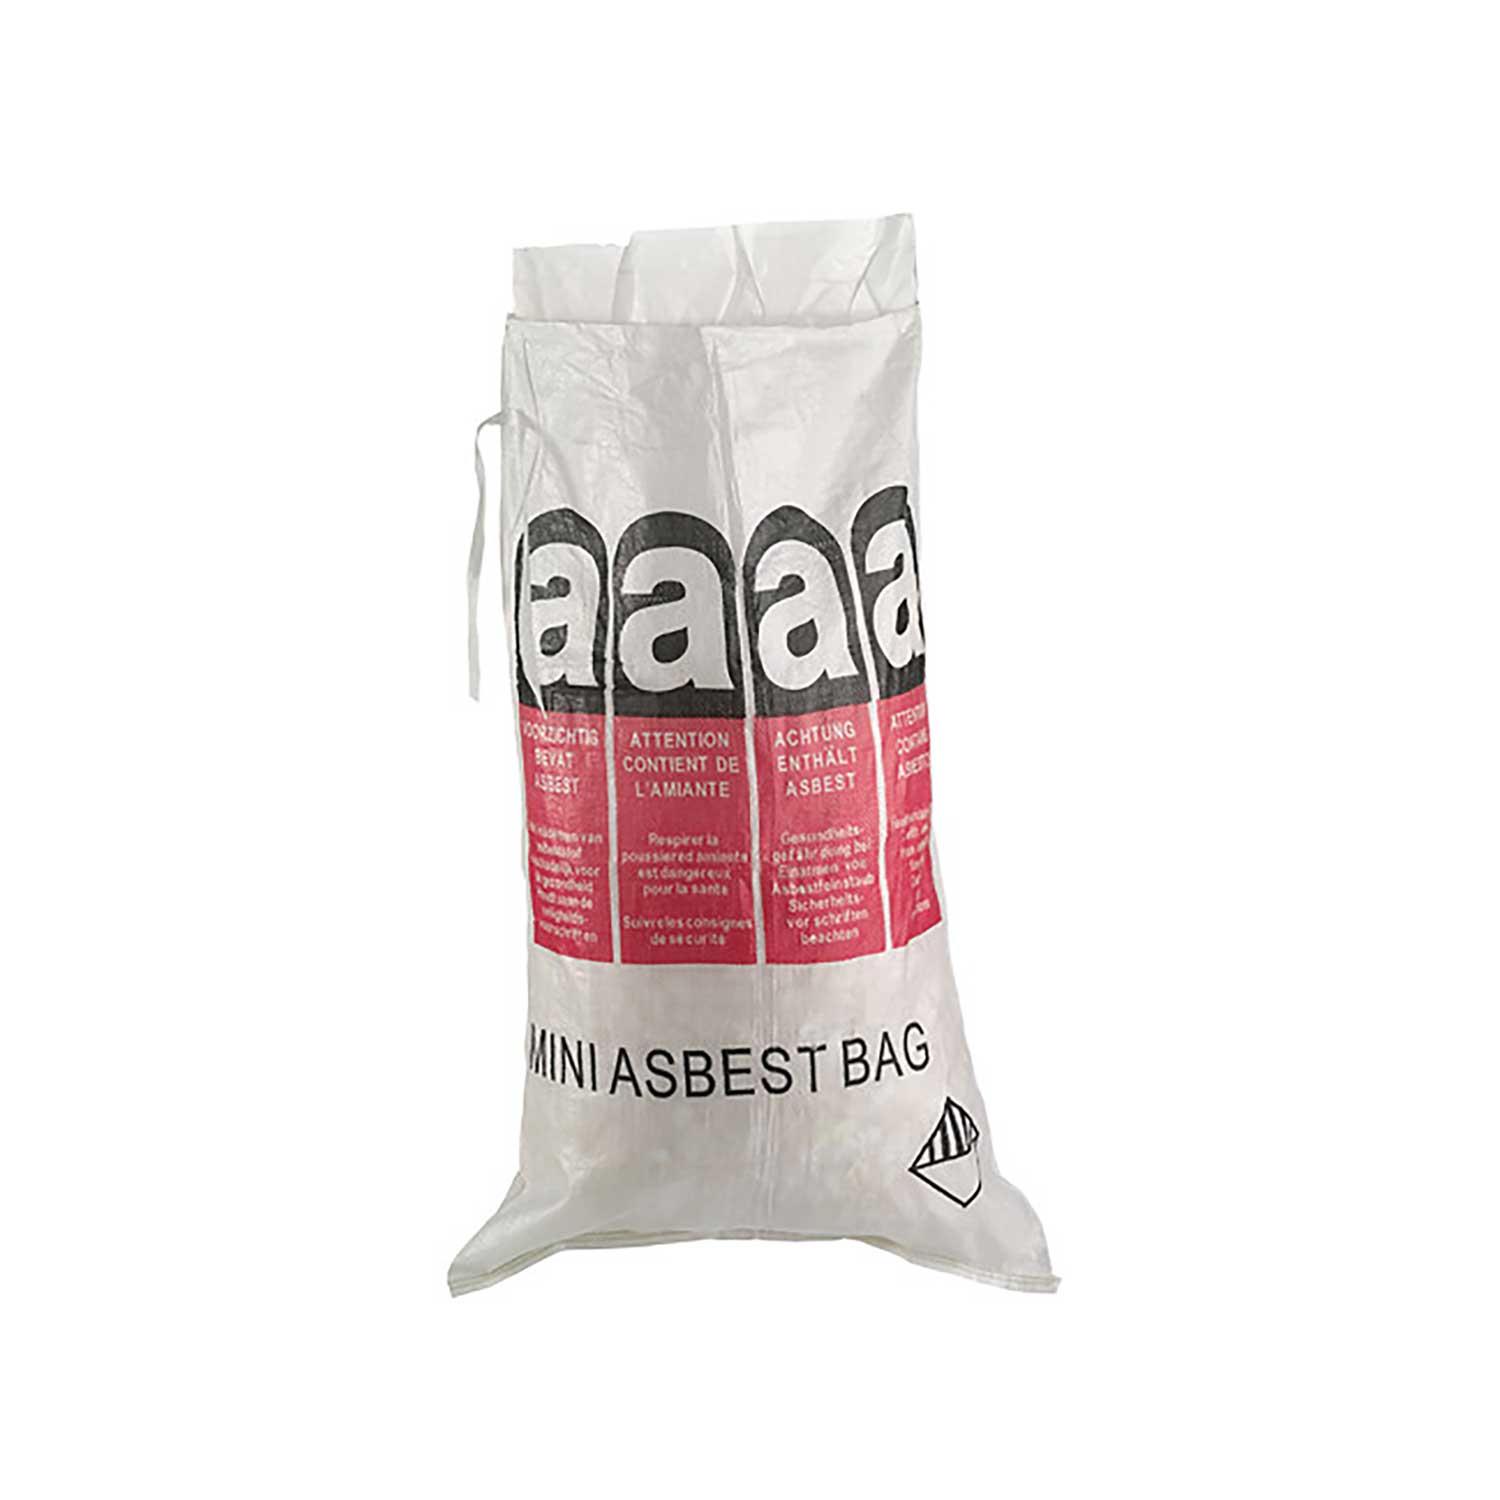 MINI-Asbestbag 70x110 cm, mit LDPE Inliner, unbeschichtet